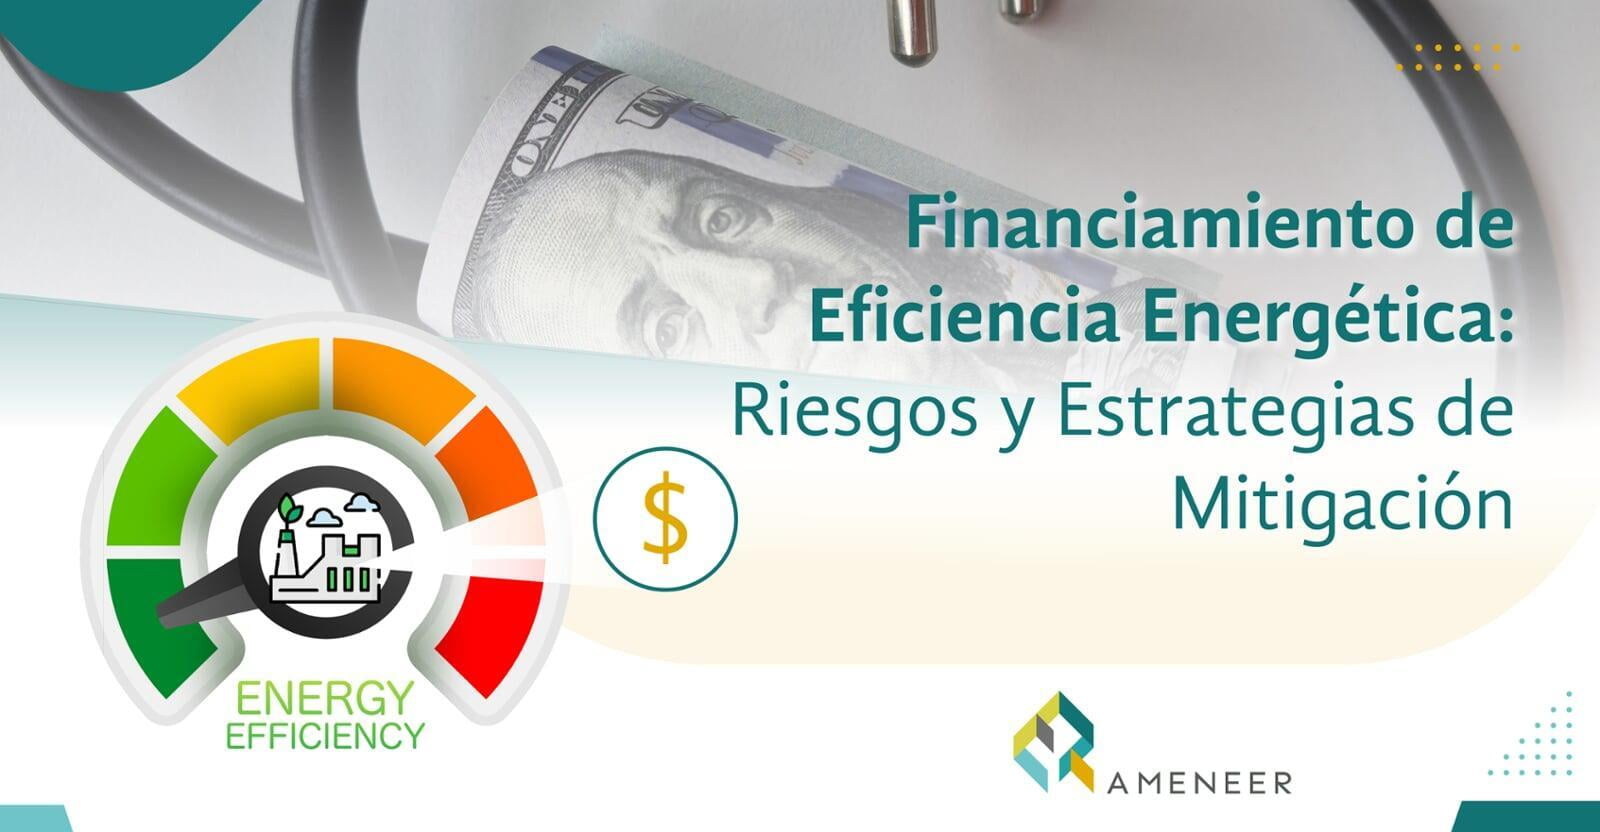 Financiamiento de Eficiencia Energética: Riesgos y Estrategias de Mitigación